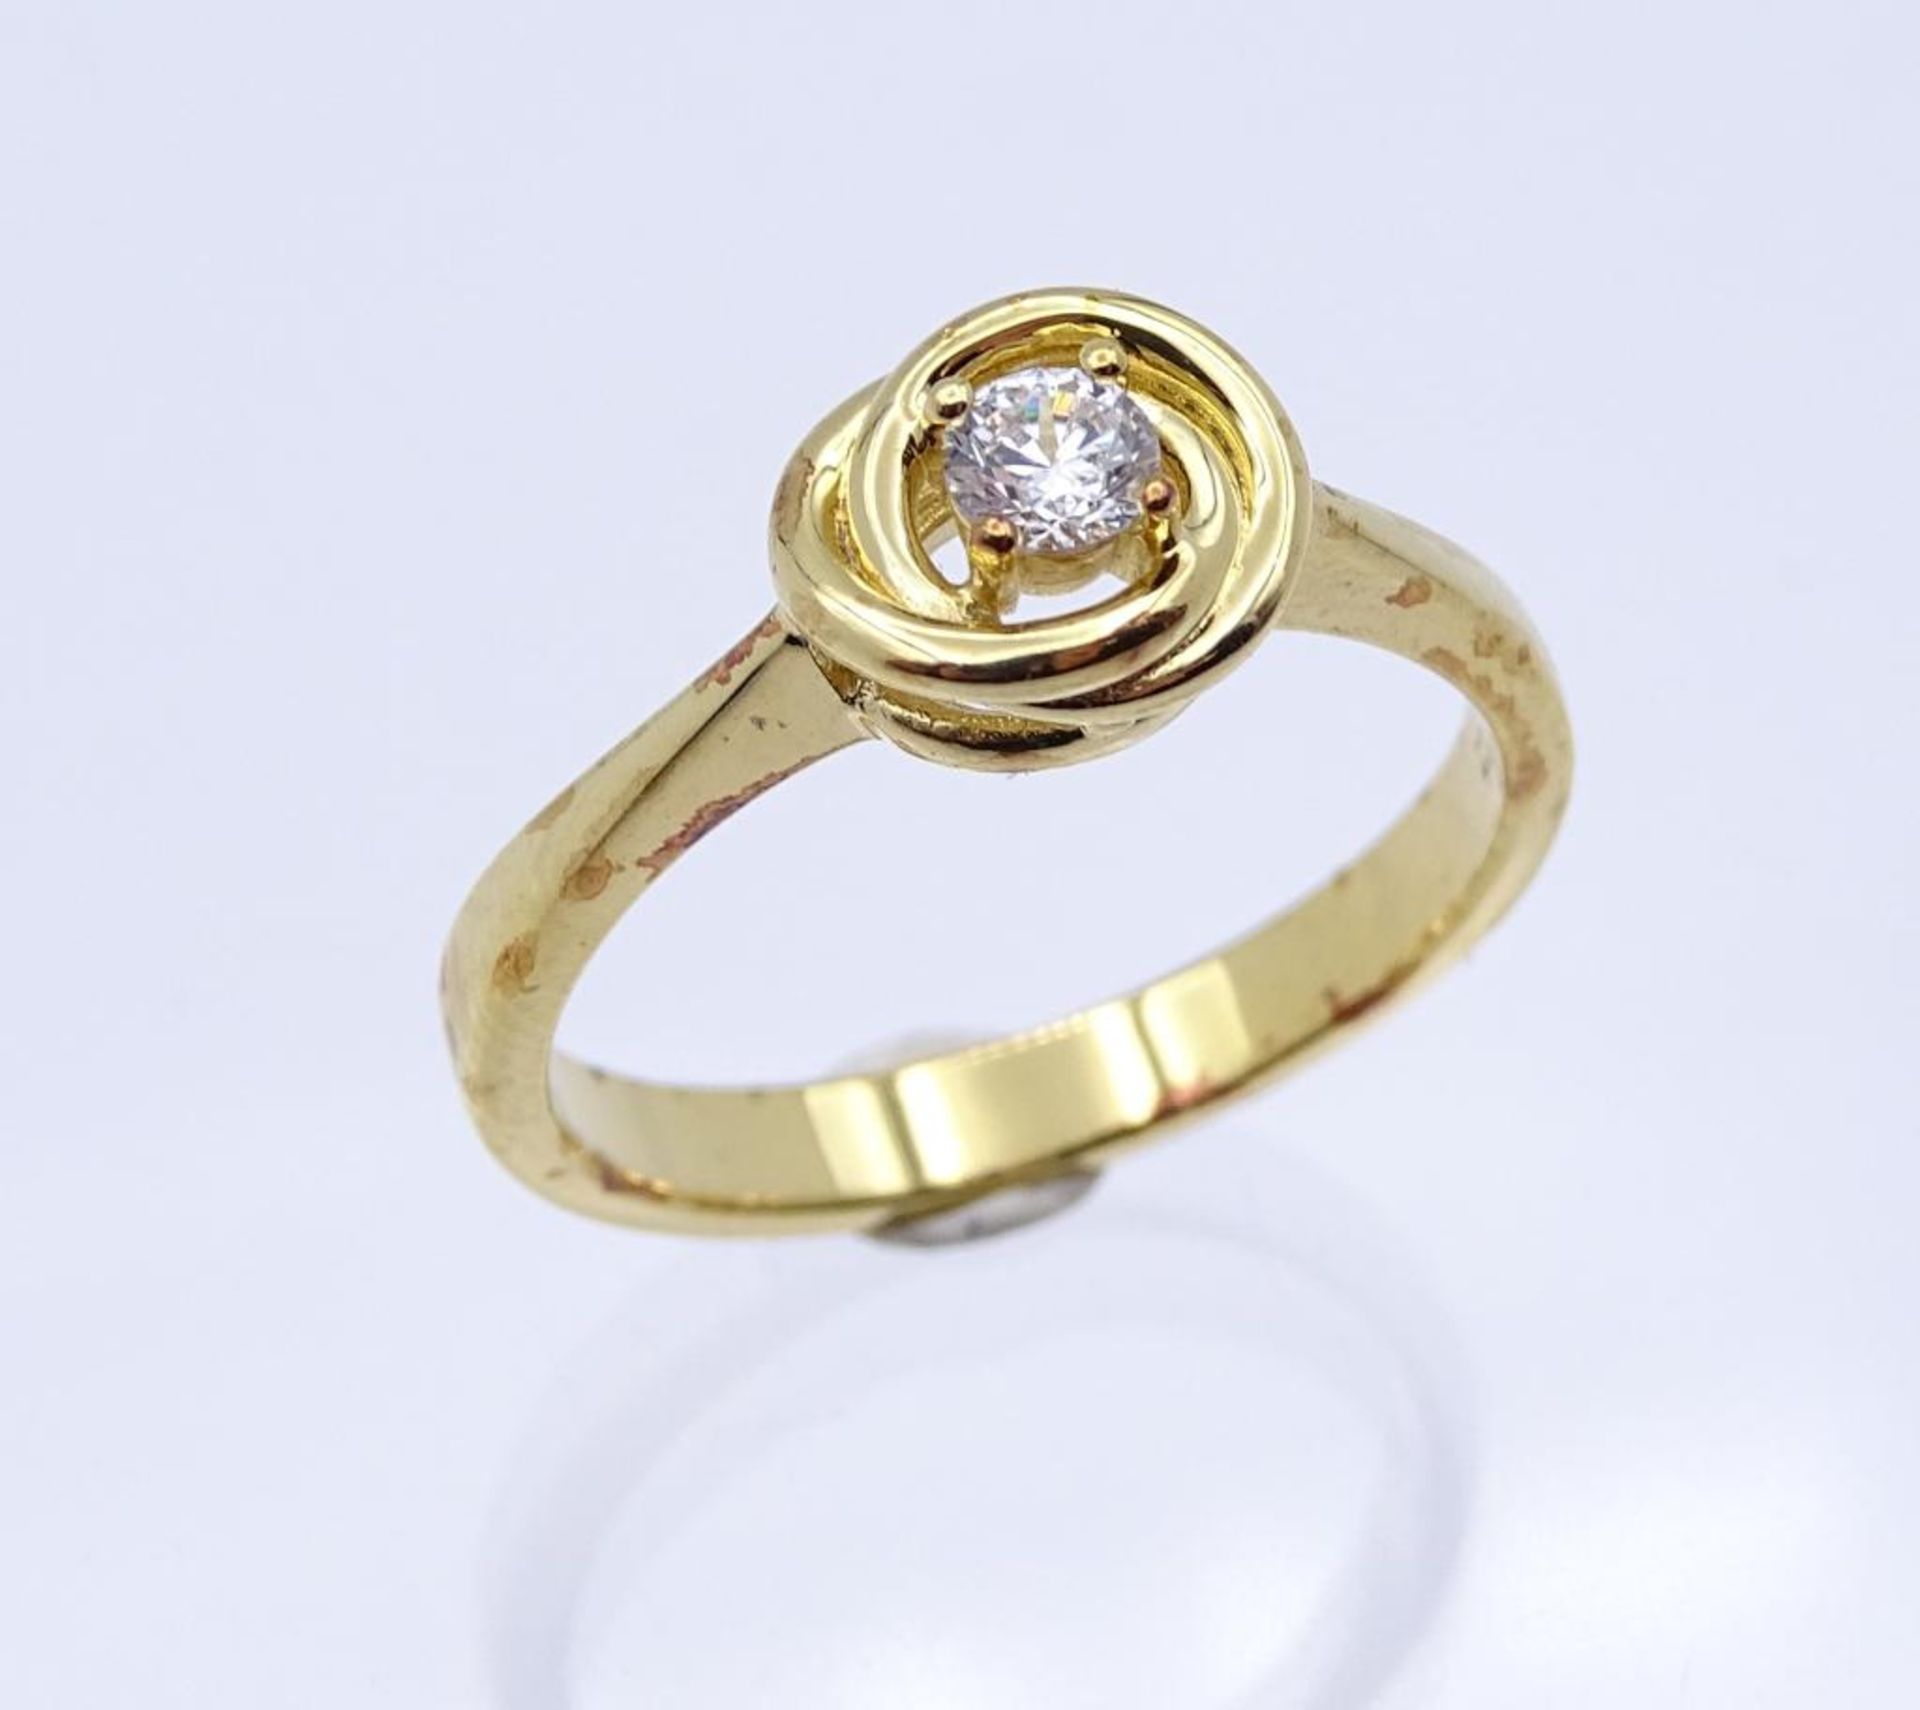 Edelstein-Ring Silber 925 vergoldet, mit einem rund fac. Weißen Edelstein 3,7 mm, RG 59, 3,6